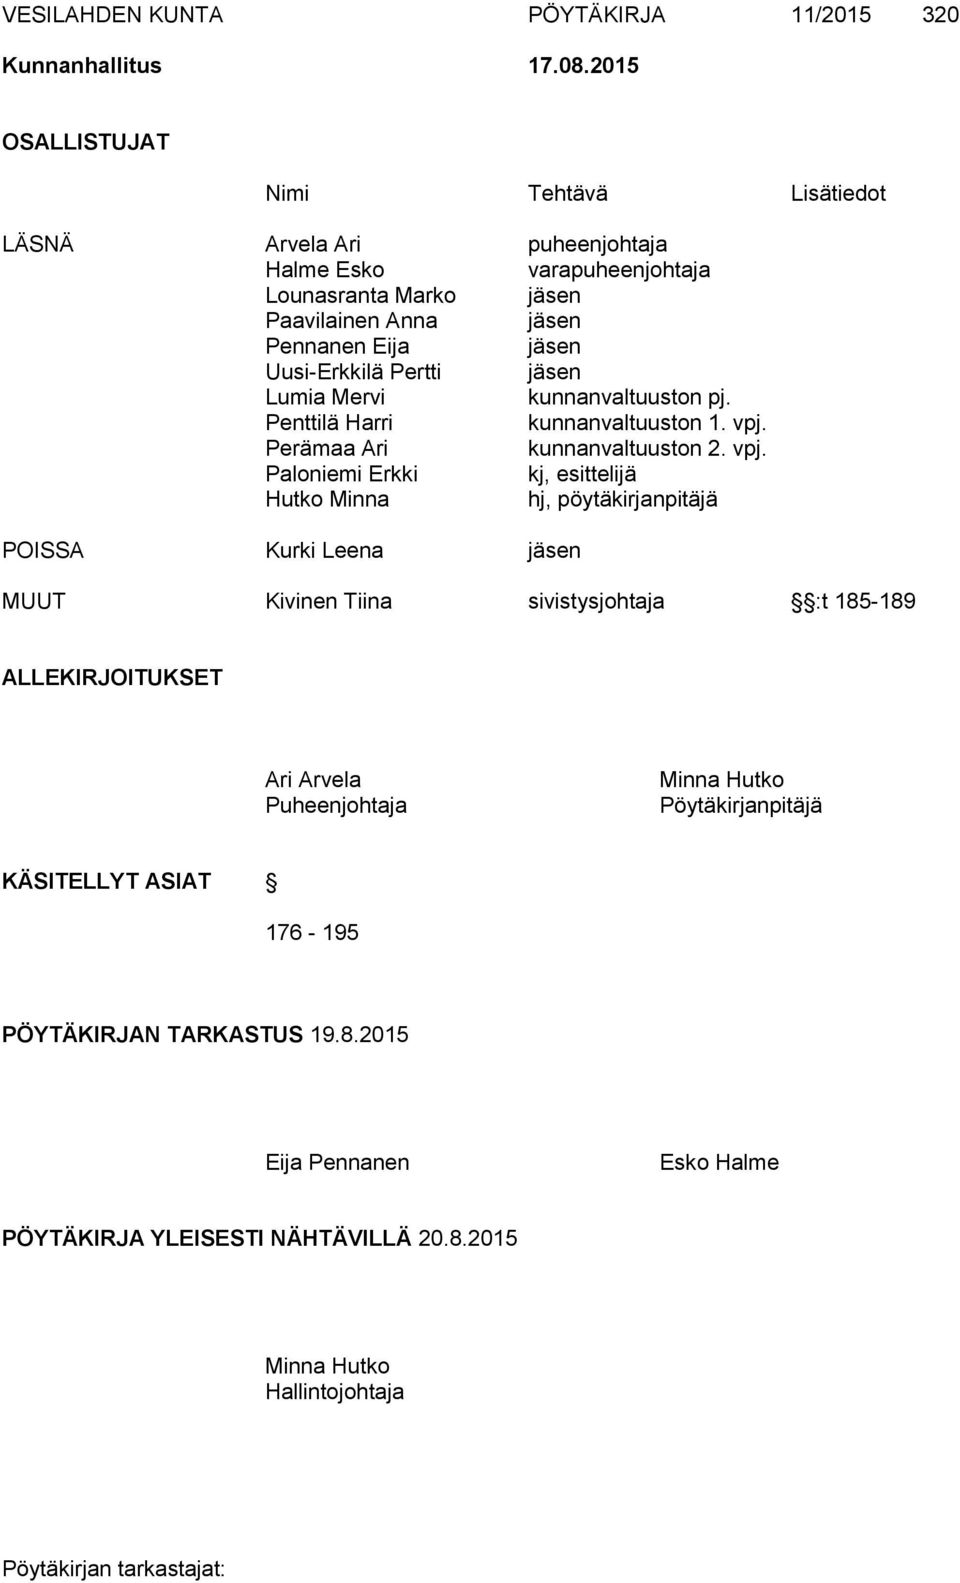 Pertti jäsen Lumia Mervi kunnanvaltuuston pj. Penttilä Harri kunnanvaltuuston 1. vpj.